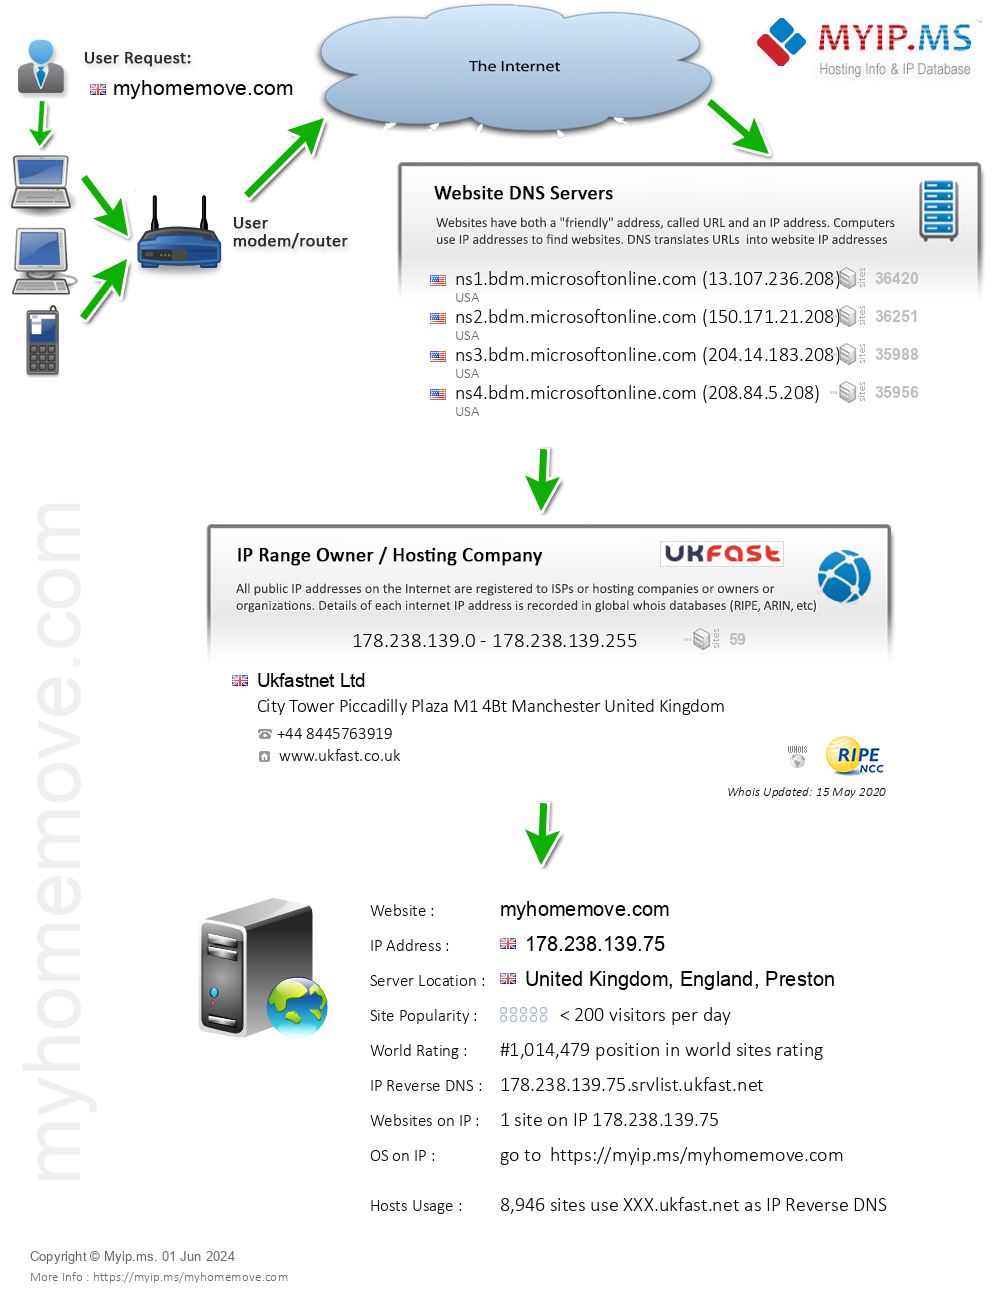 Myhomemove.com - Website Hosting Visual IP Diagram